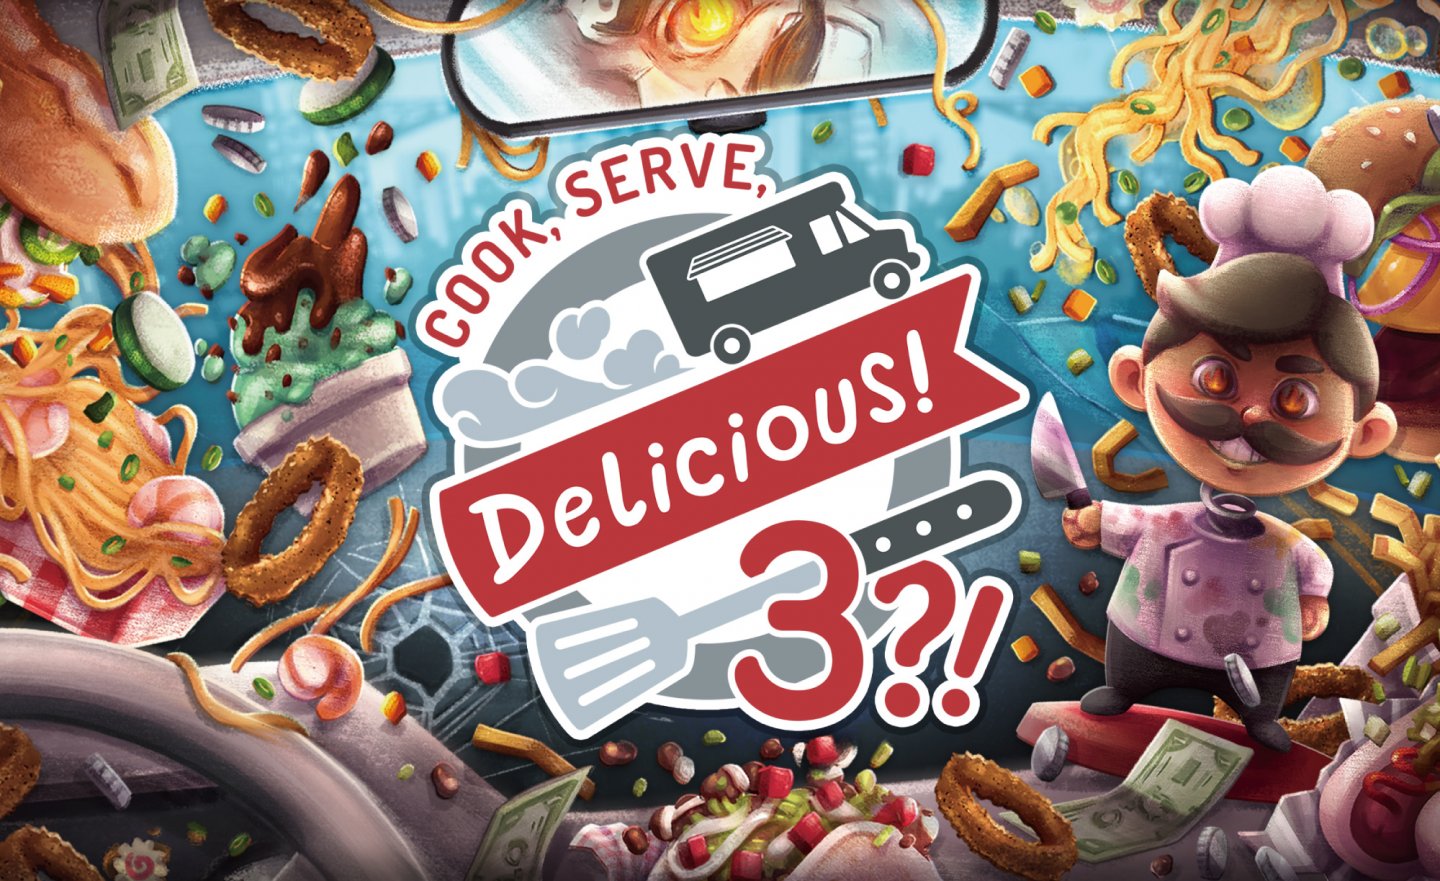 【限時免費】動作模擬遊戲《Cook, Serve, Delicious! 3?!》放送中，快搶在 2022 年 8 月 18 日 23:00 前領取